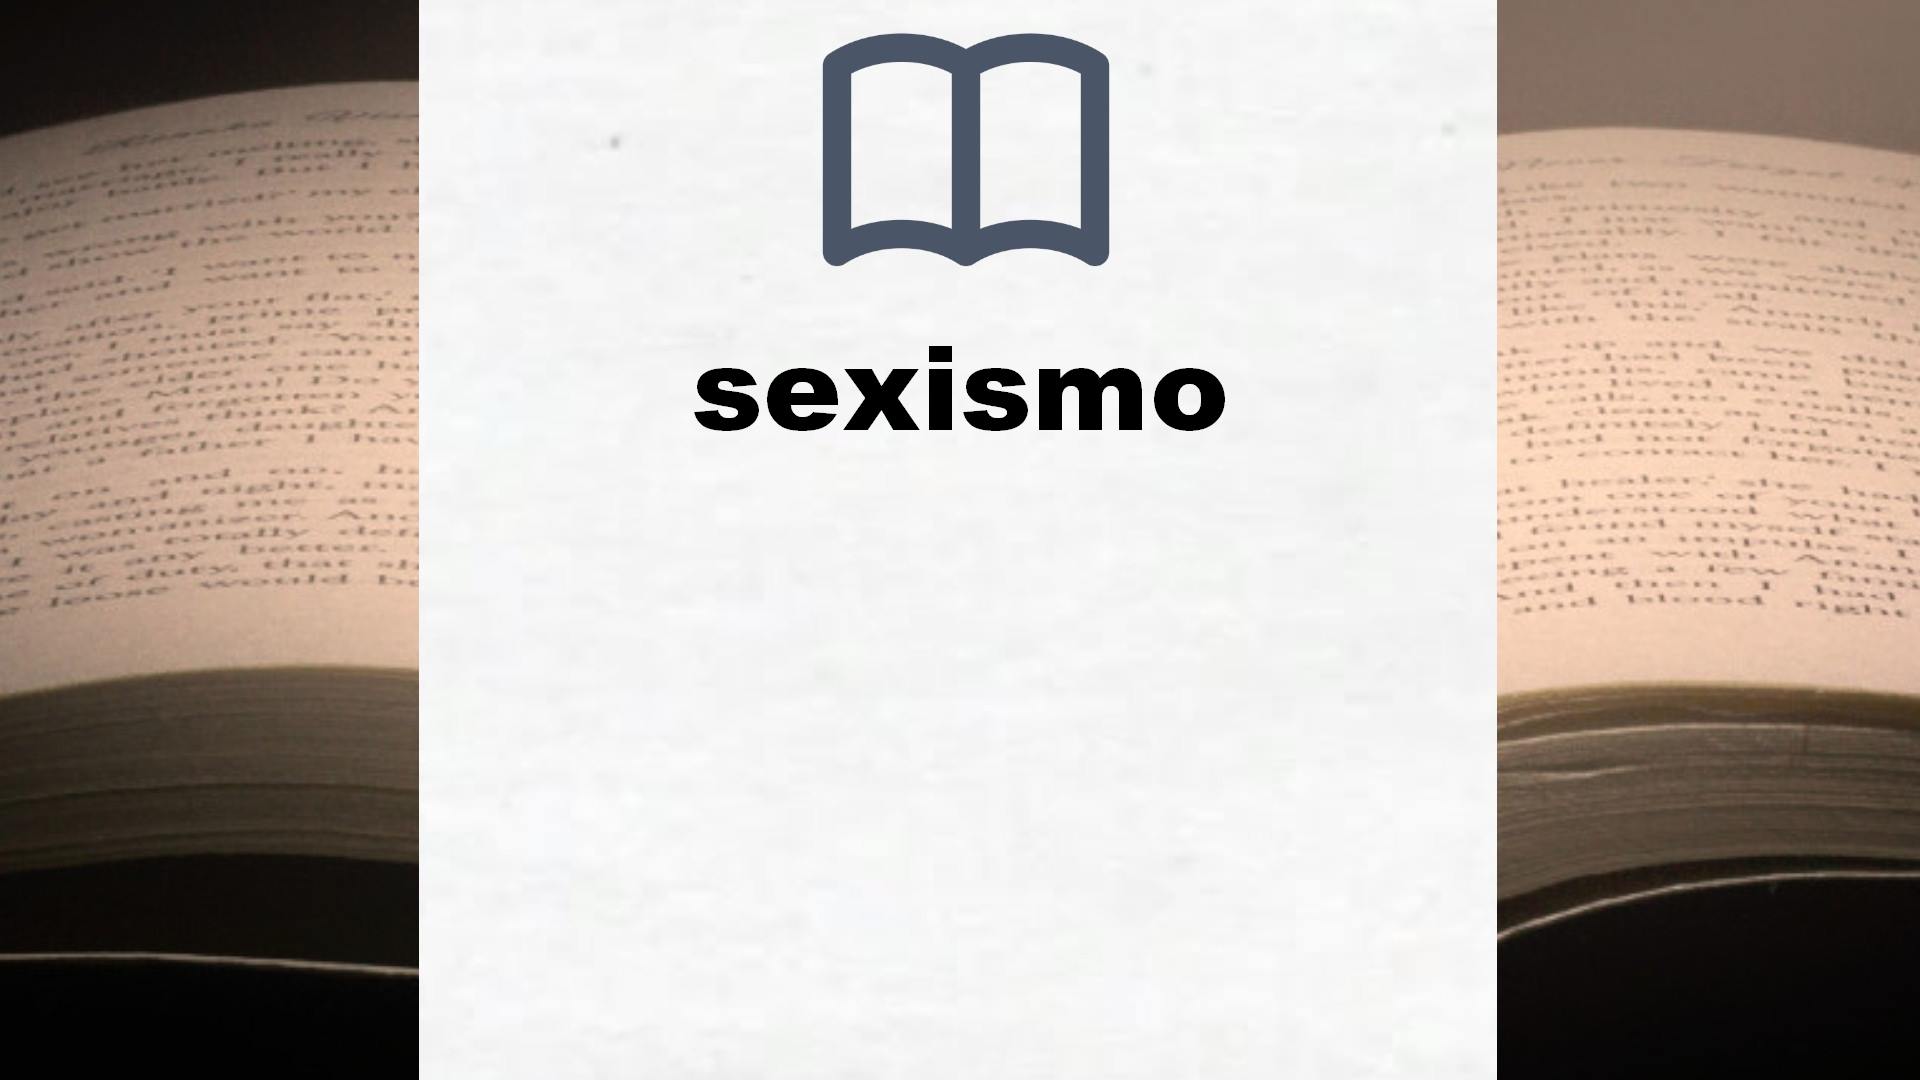 Libros sobre sexismo